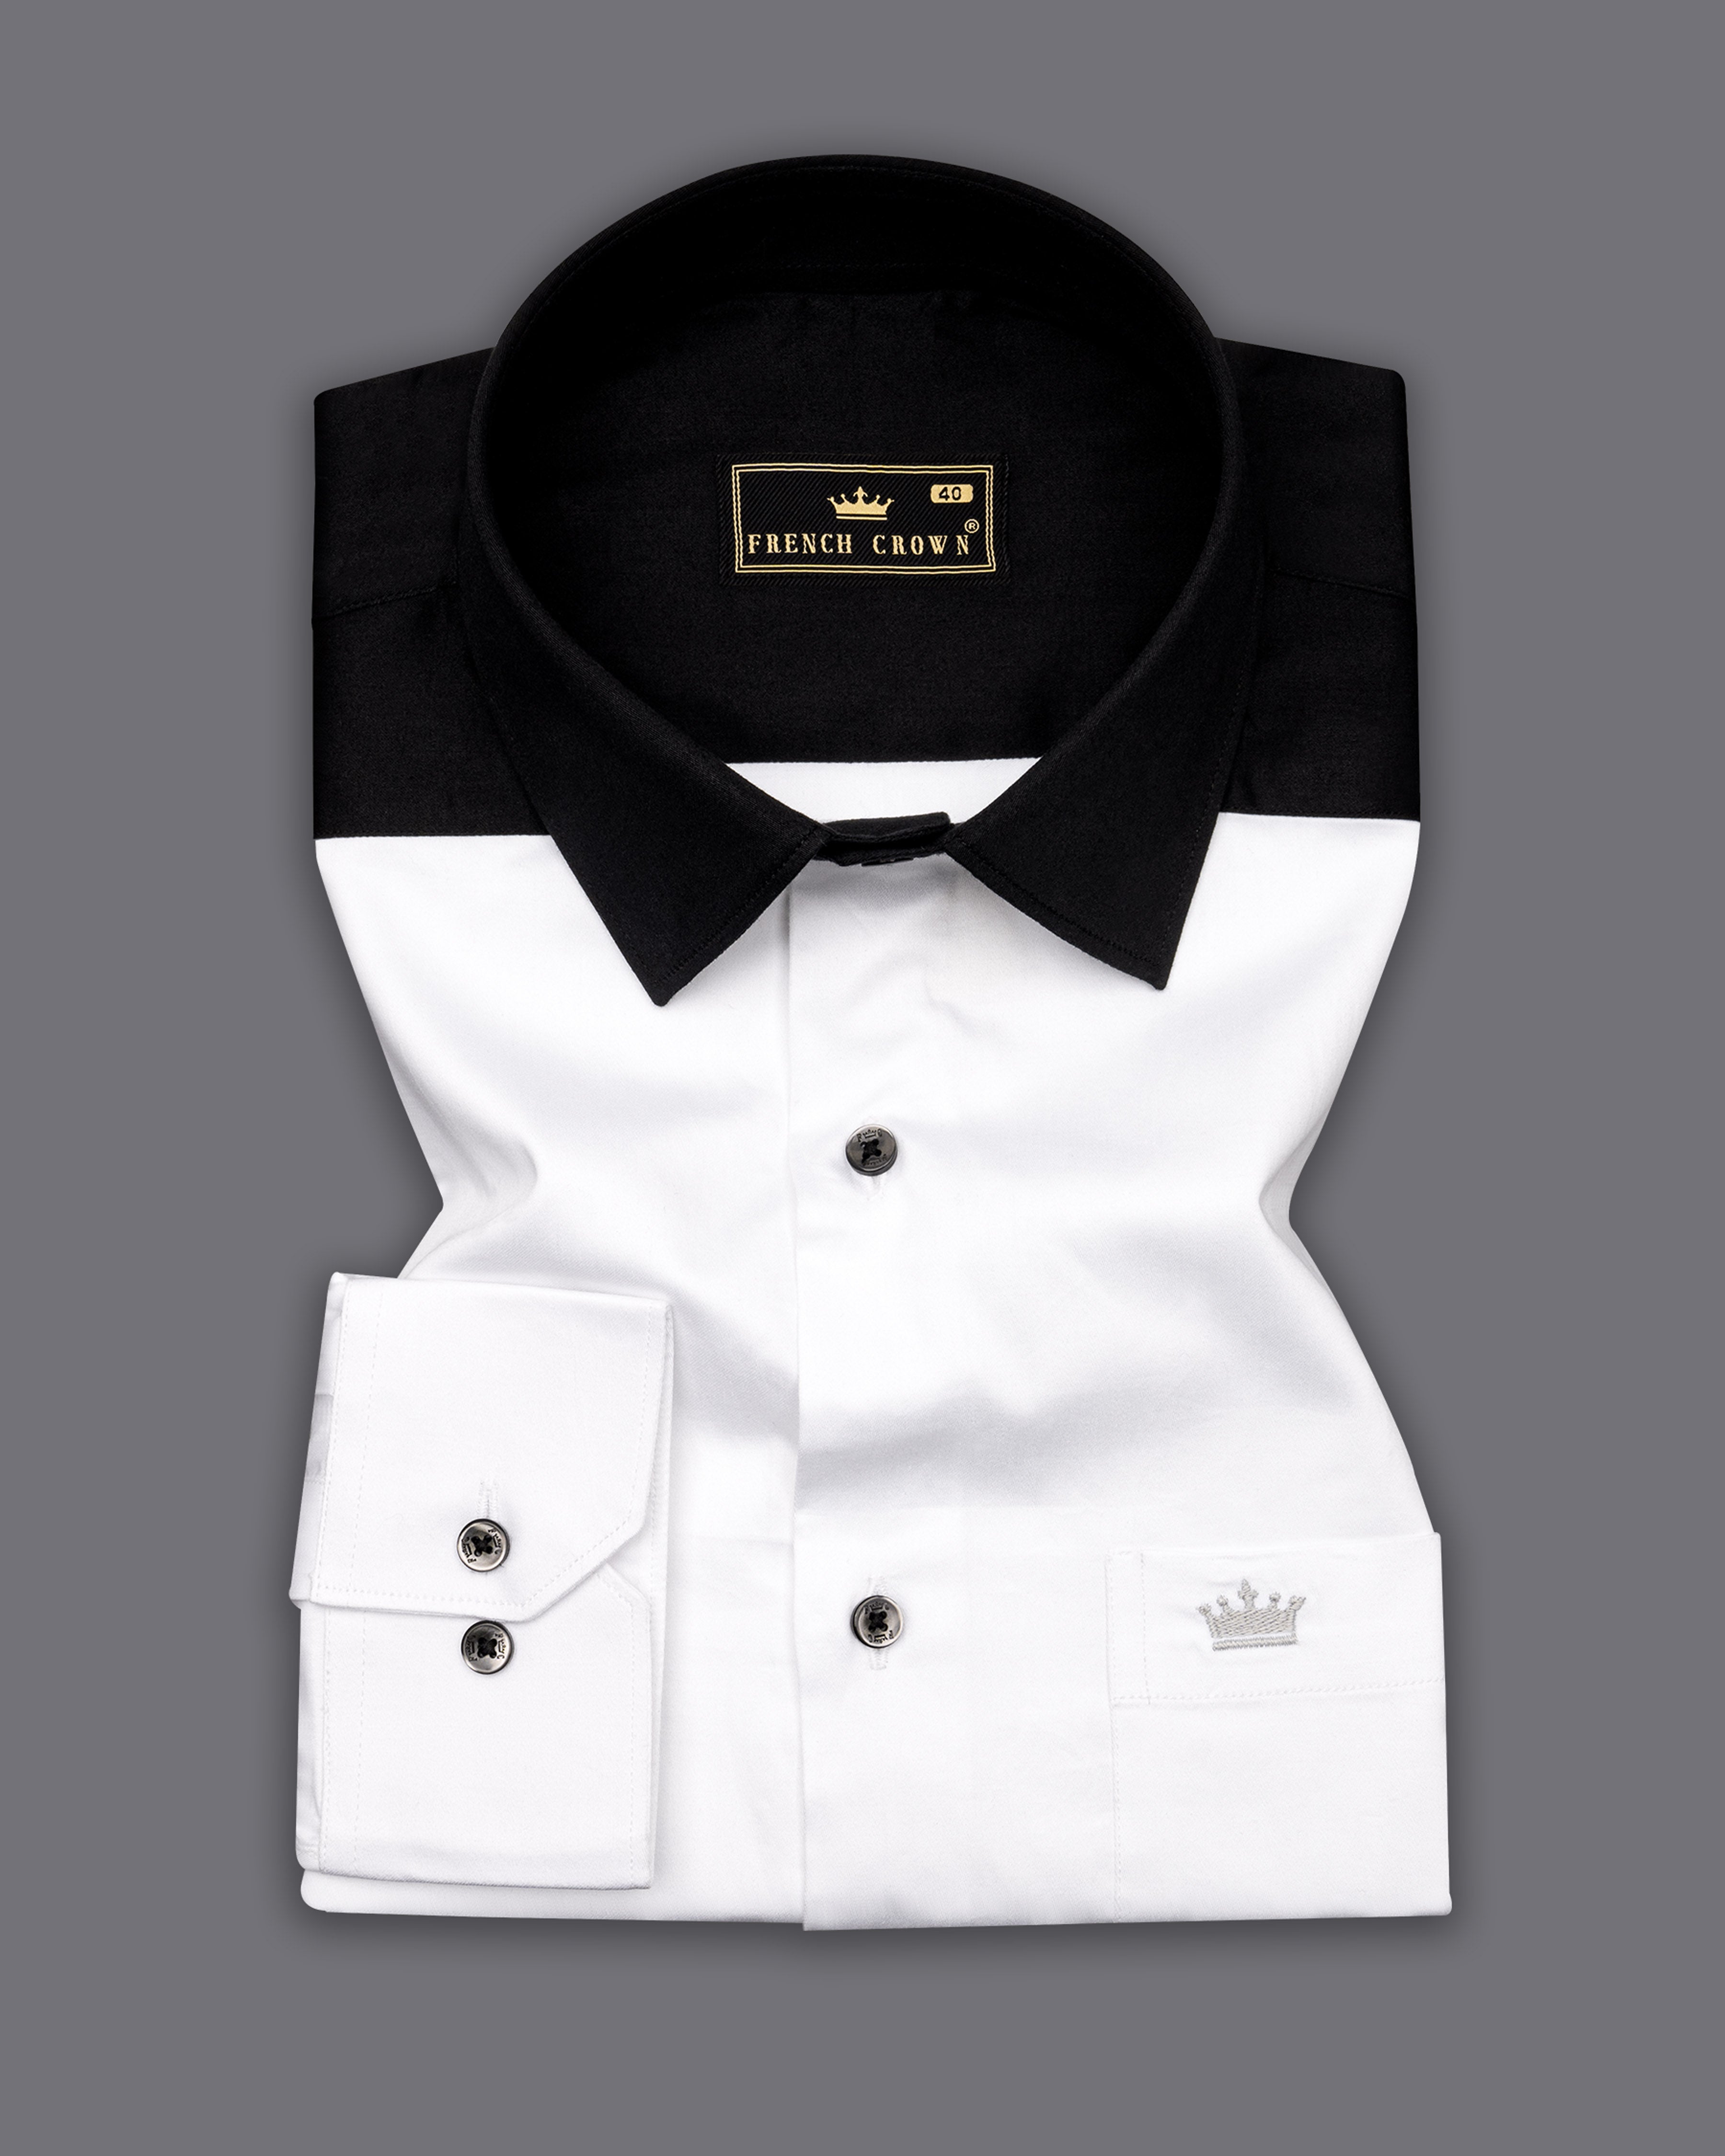 Bright White Subtle Sheen and Black Super Soft Premium Cotton Designer Shirt 9548-BLK-P586-38,9548-BLK-P586-H-38,9548-BLK-P586-39,9548-BLK-P586-H-39,9548-BLK-P586-40,9548-BLK-P586-H-40,9548-BLK-P586-42,9548-BLK-P586-H-42,9548-BLK-P586-44,9548-BLK-P586-H-44,9548-BLK-P586-46,9548-BLK-P586-H-46,9548-BLK-P586-48,9548-BLK-P586-H-48,9548-BLK-P586-50,9548-BLK-P586-H-50,9548-BLK-P586-52,9548-BLK-P586-H-52